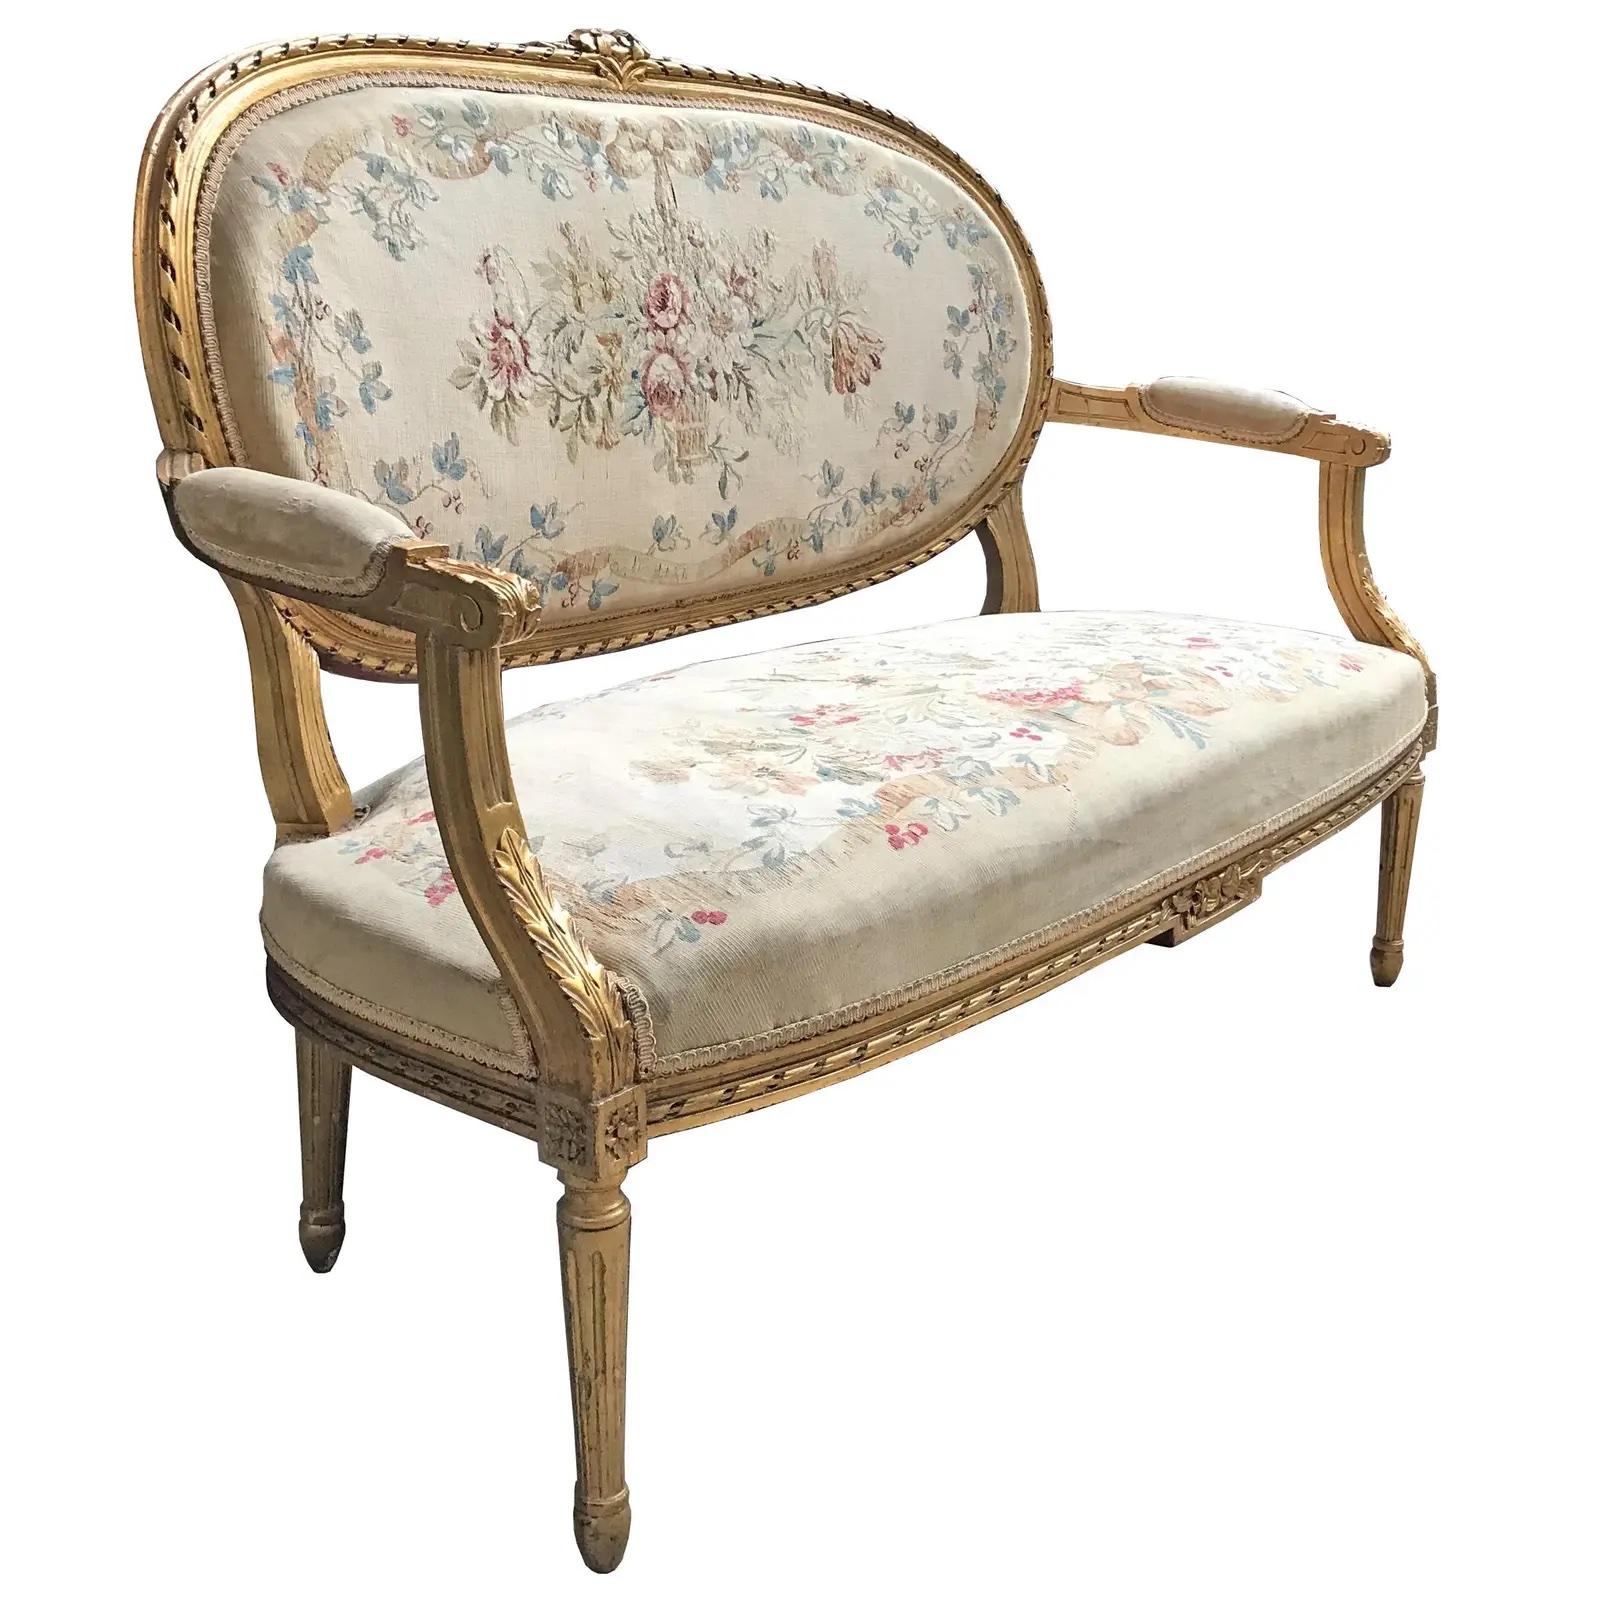 Canapé français du XIXe siècle de style Louis XVI en bois doré, avec un cartouche floral au sommet du dossier, entouré d'un motif de ruban sculpté, avec des pieds cannelés et effilés. Le dossier et l'assise sont tapissés d'un Aubusson floral avec de